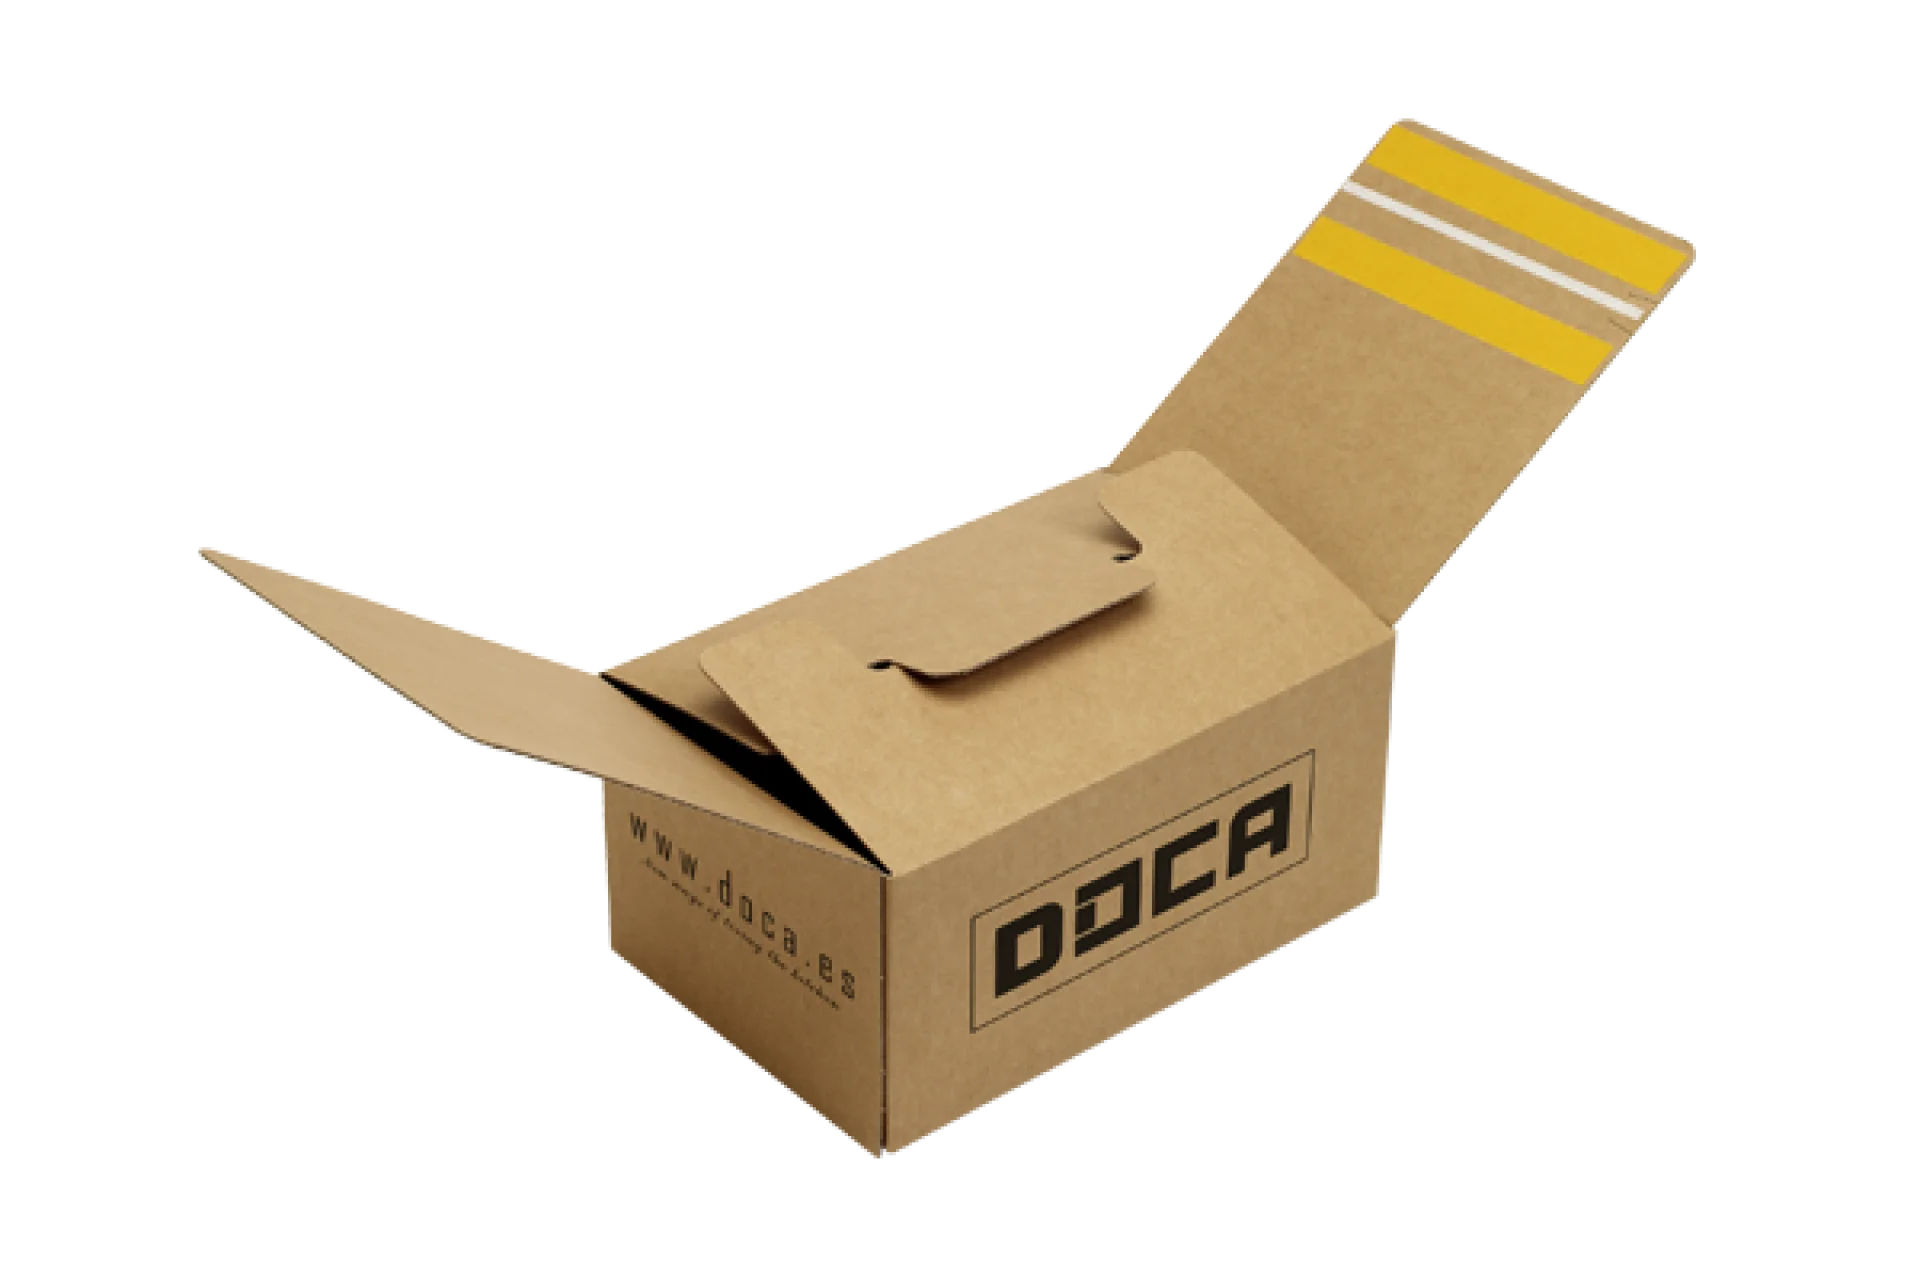 Cajas cartón montaje rápido para envío y devolución capsa2in1® eZ-Plus